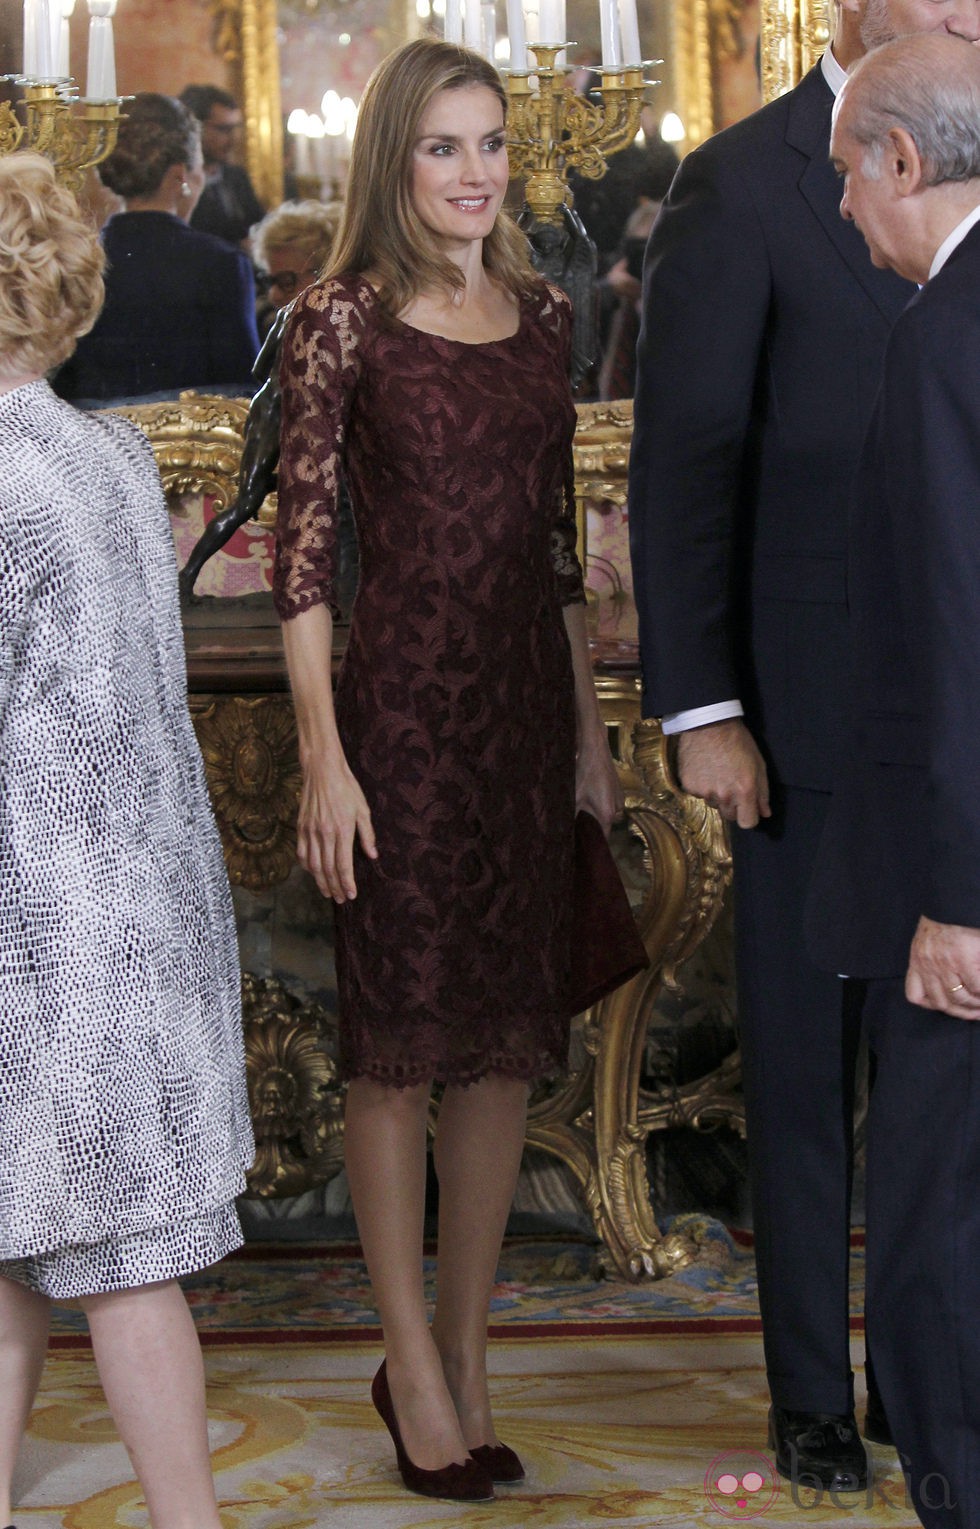 La Princesa Letizia en la recepción del Día de la Hispanidad 2013